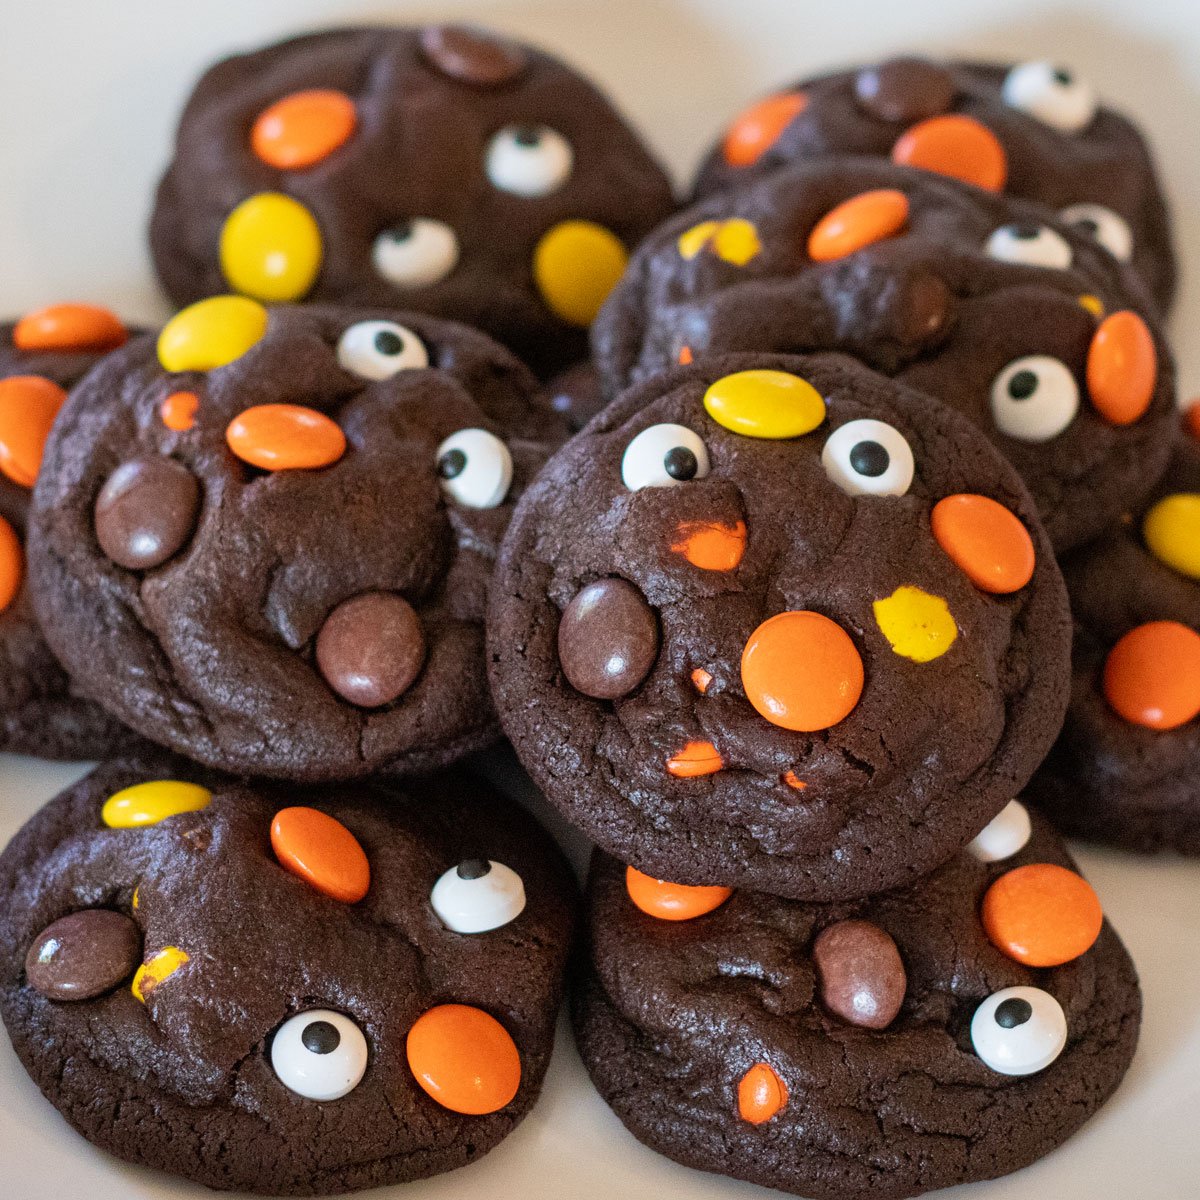 Immagine quadrata dei biscotti Reese's Pieces al cioccolato di Halloween.